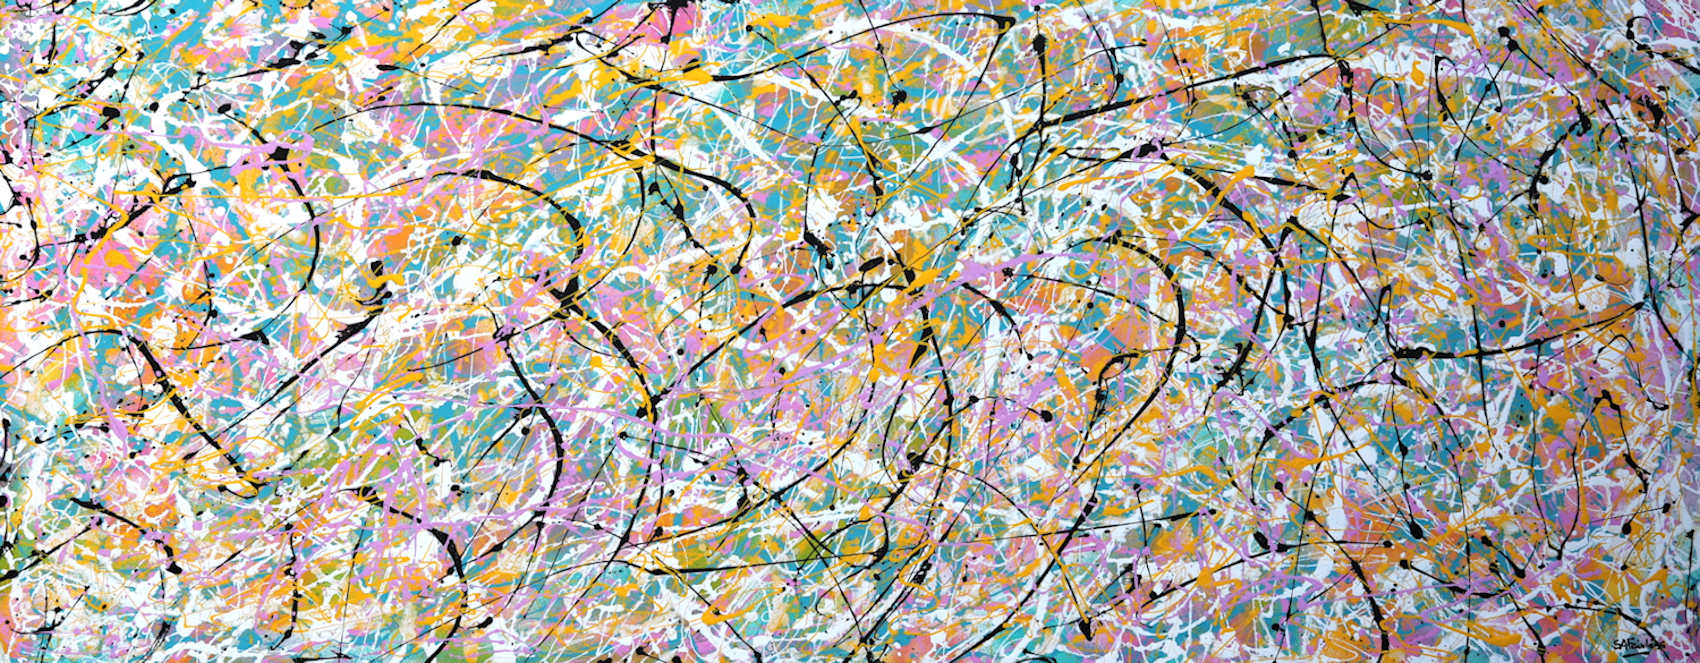 Minimalist abstract painting in Jackson Pollock style